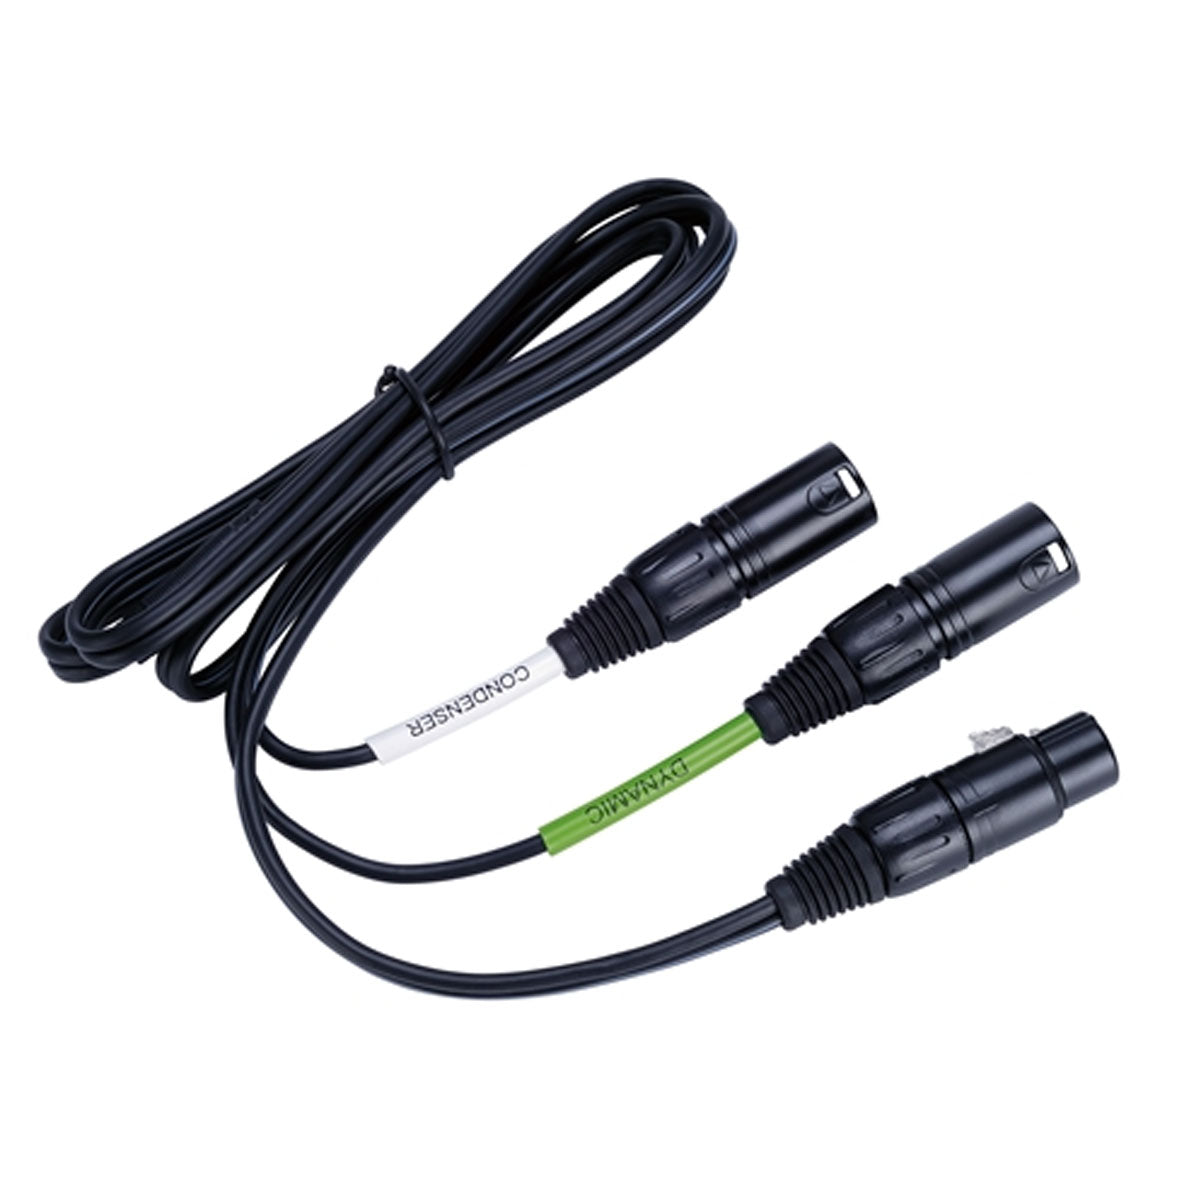 Lewitt Audio DTP 40 TRS 1.5 m Cable for DTP 640 REX Microphone